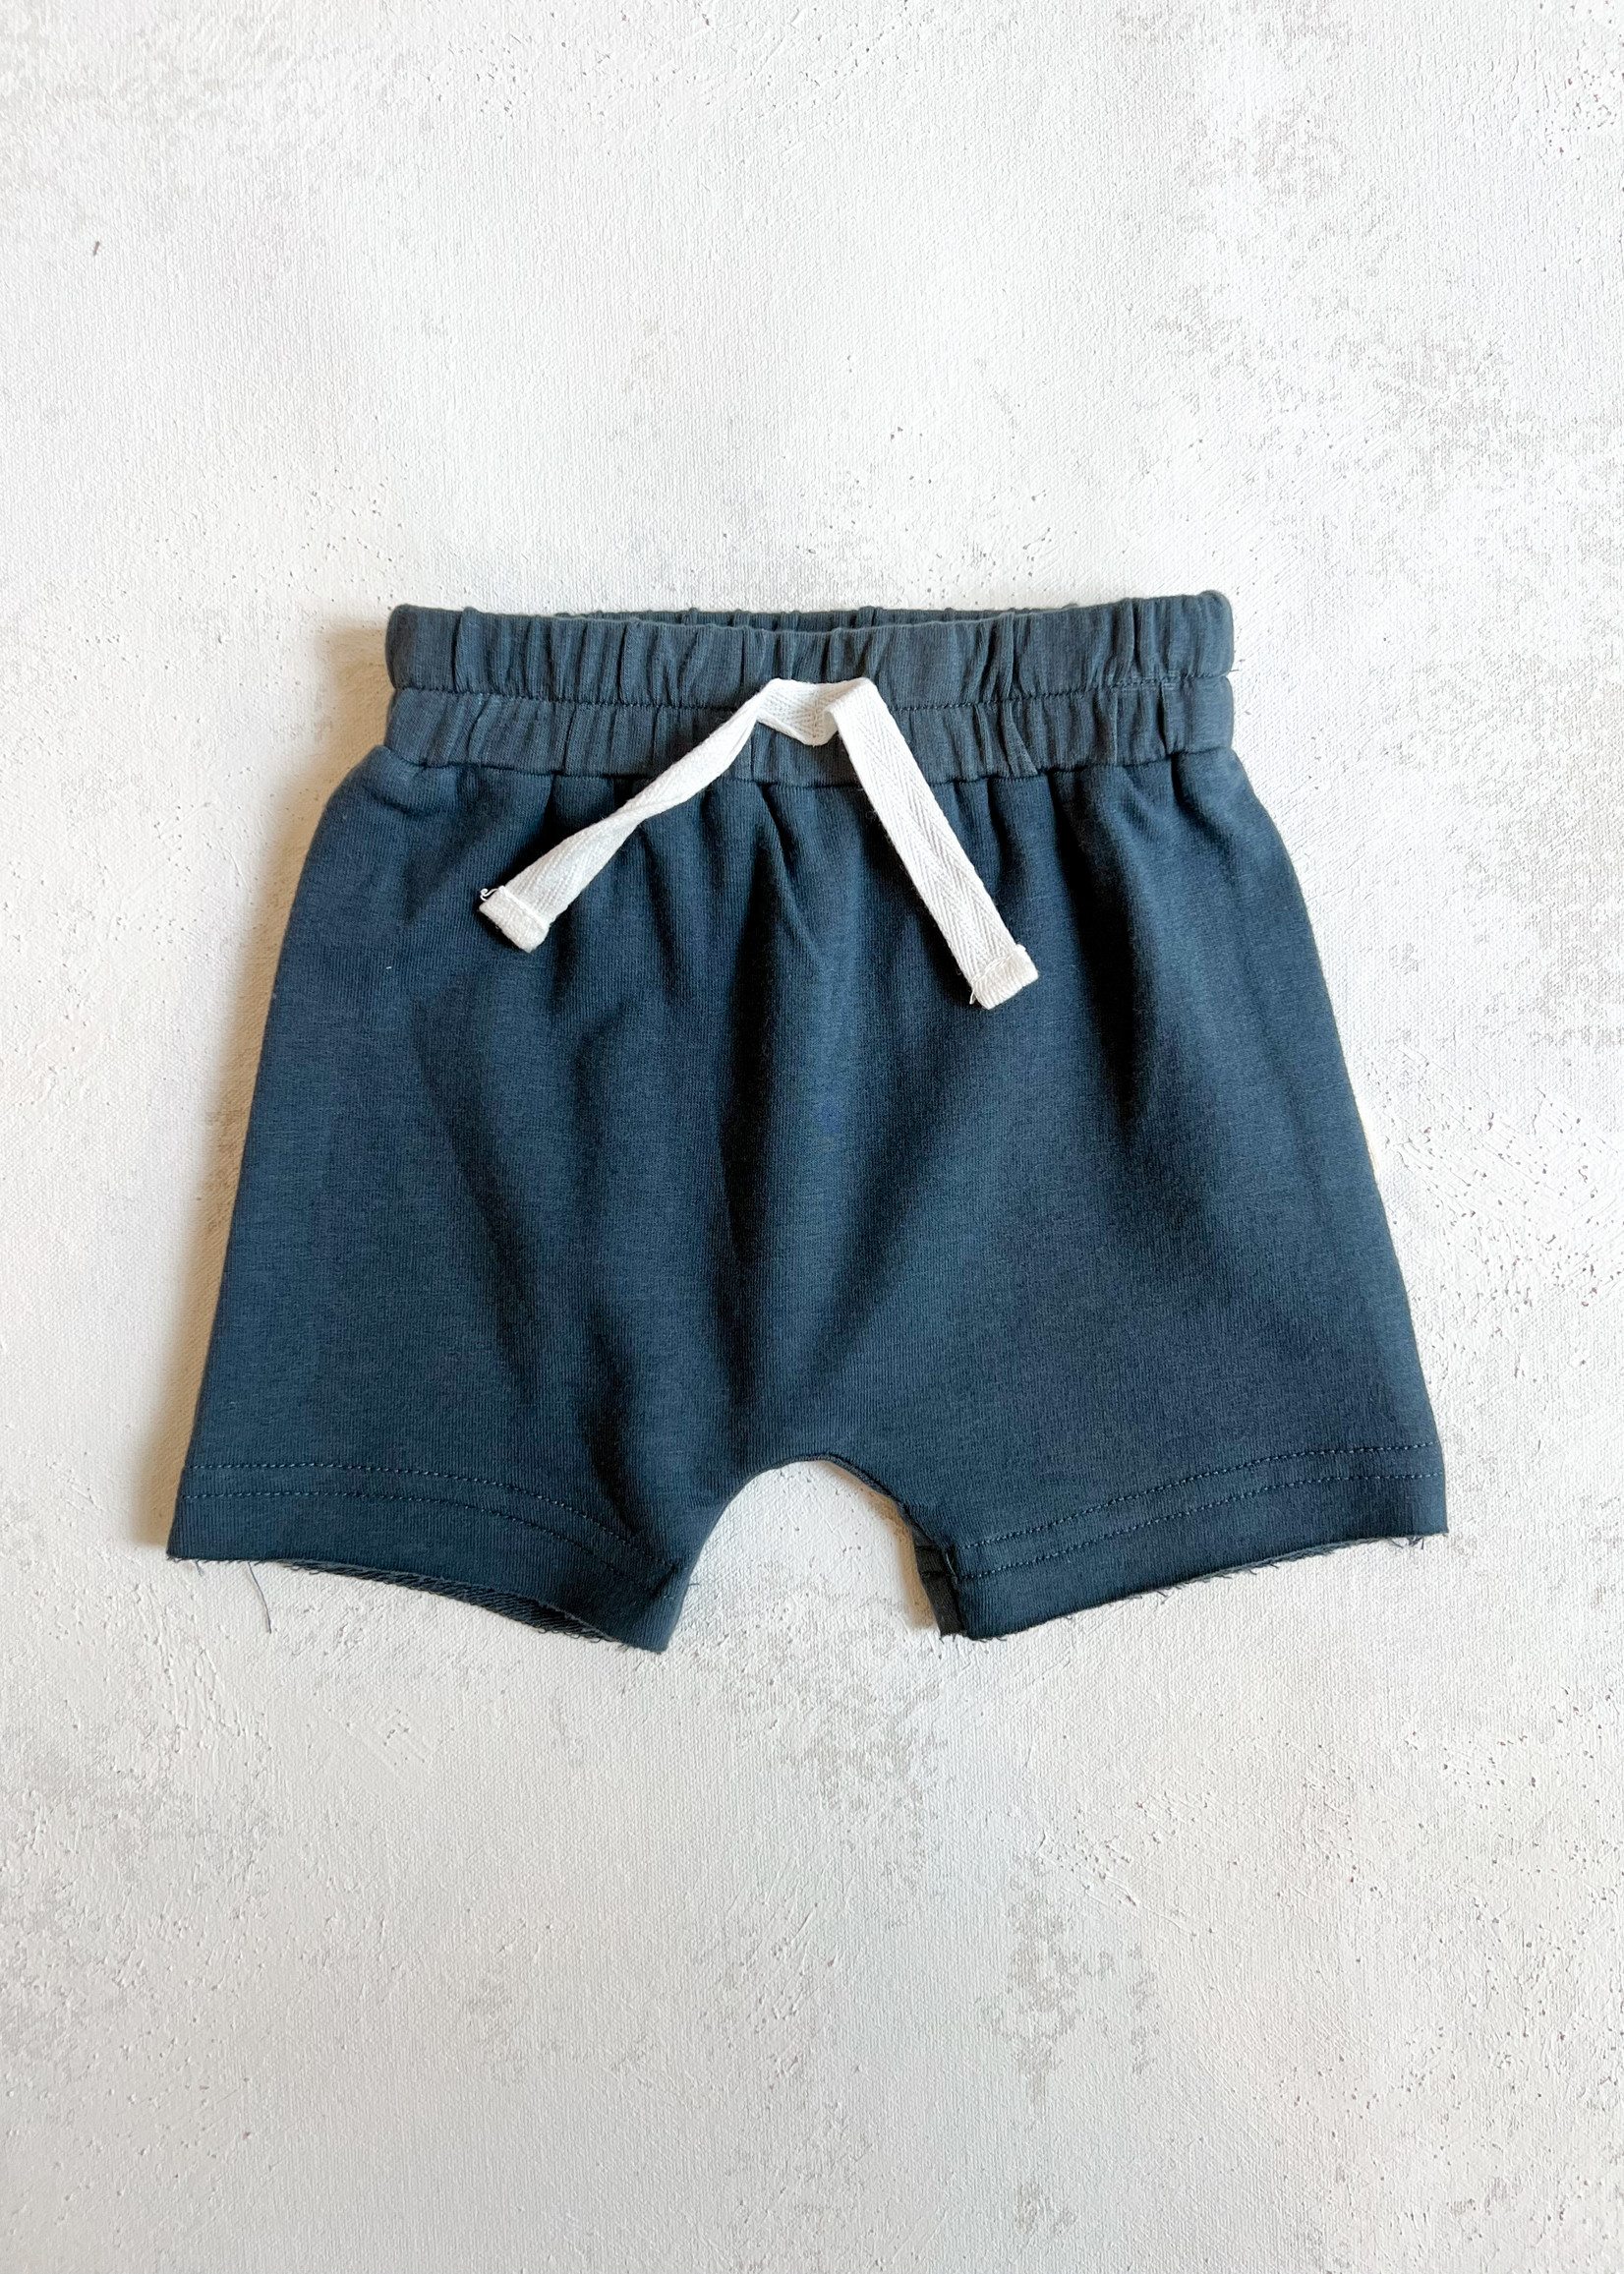 Elitaire Boutique Harem Shorts in Dusty Blue